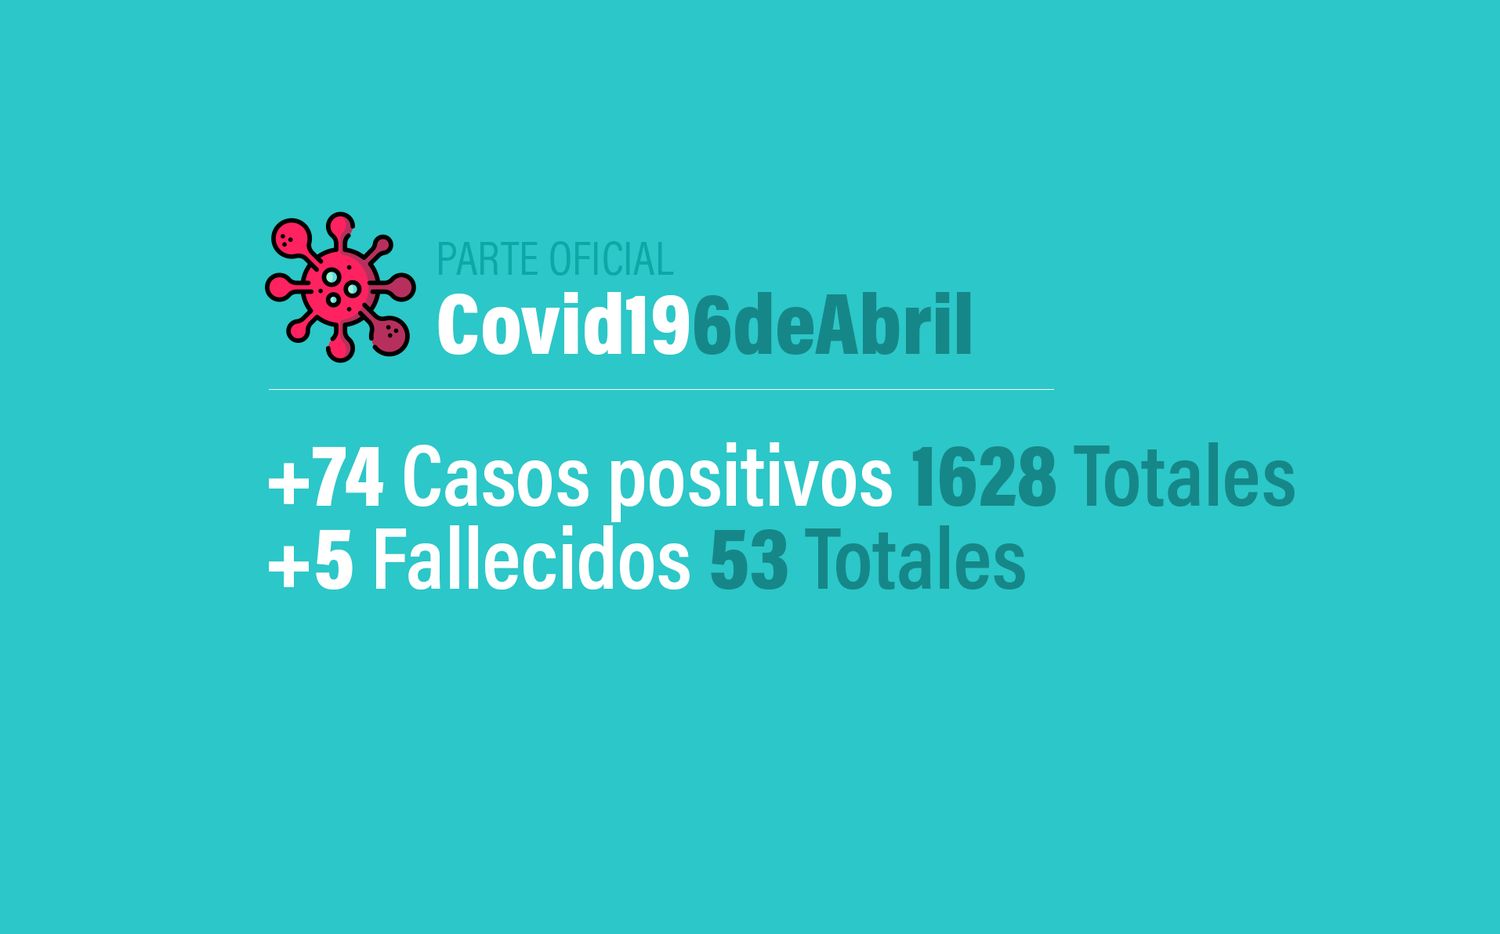 Coronavirus en Argentina: 74 casos nuevos, 1628 confirmados y 53 muertes, al 6 de abril